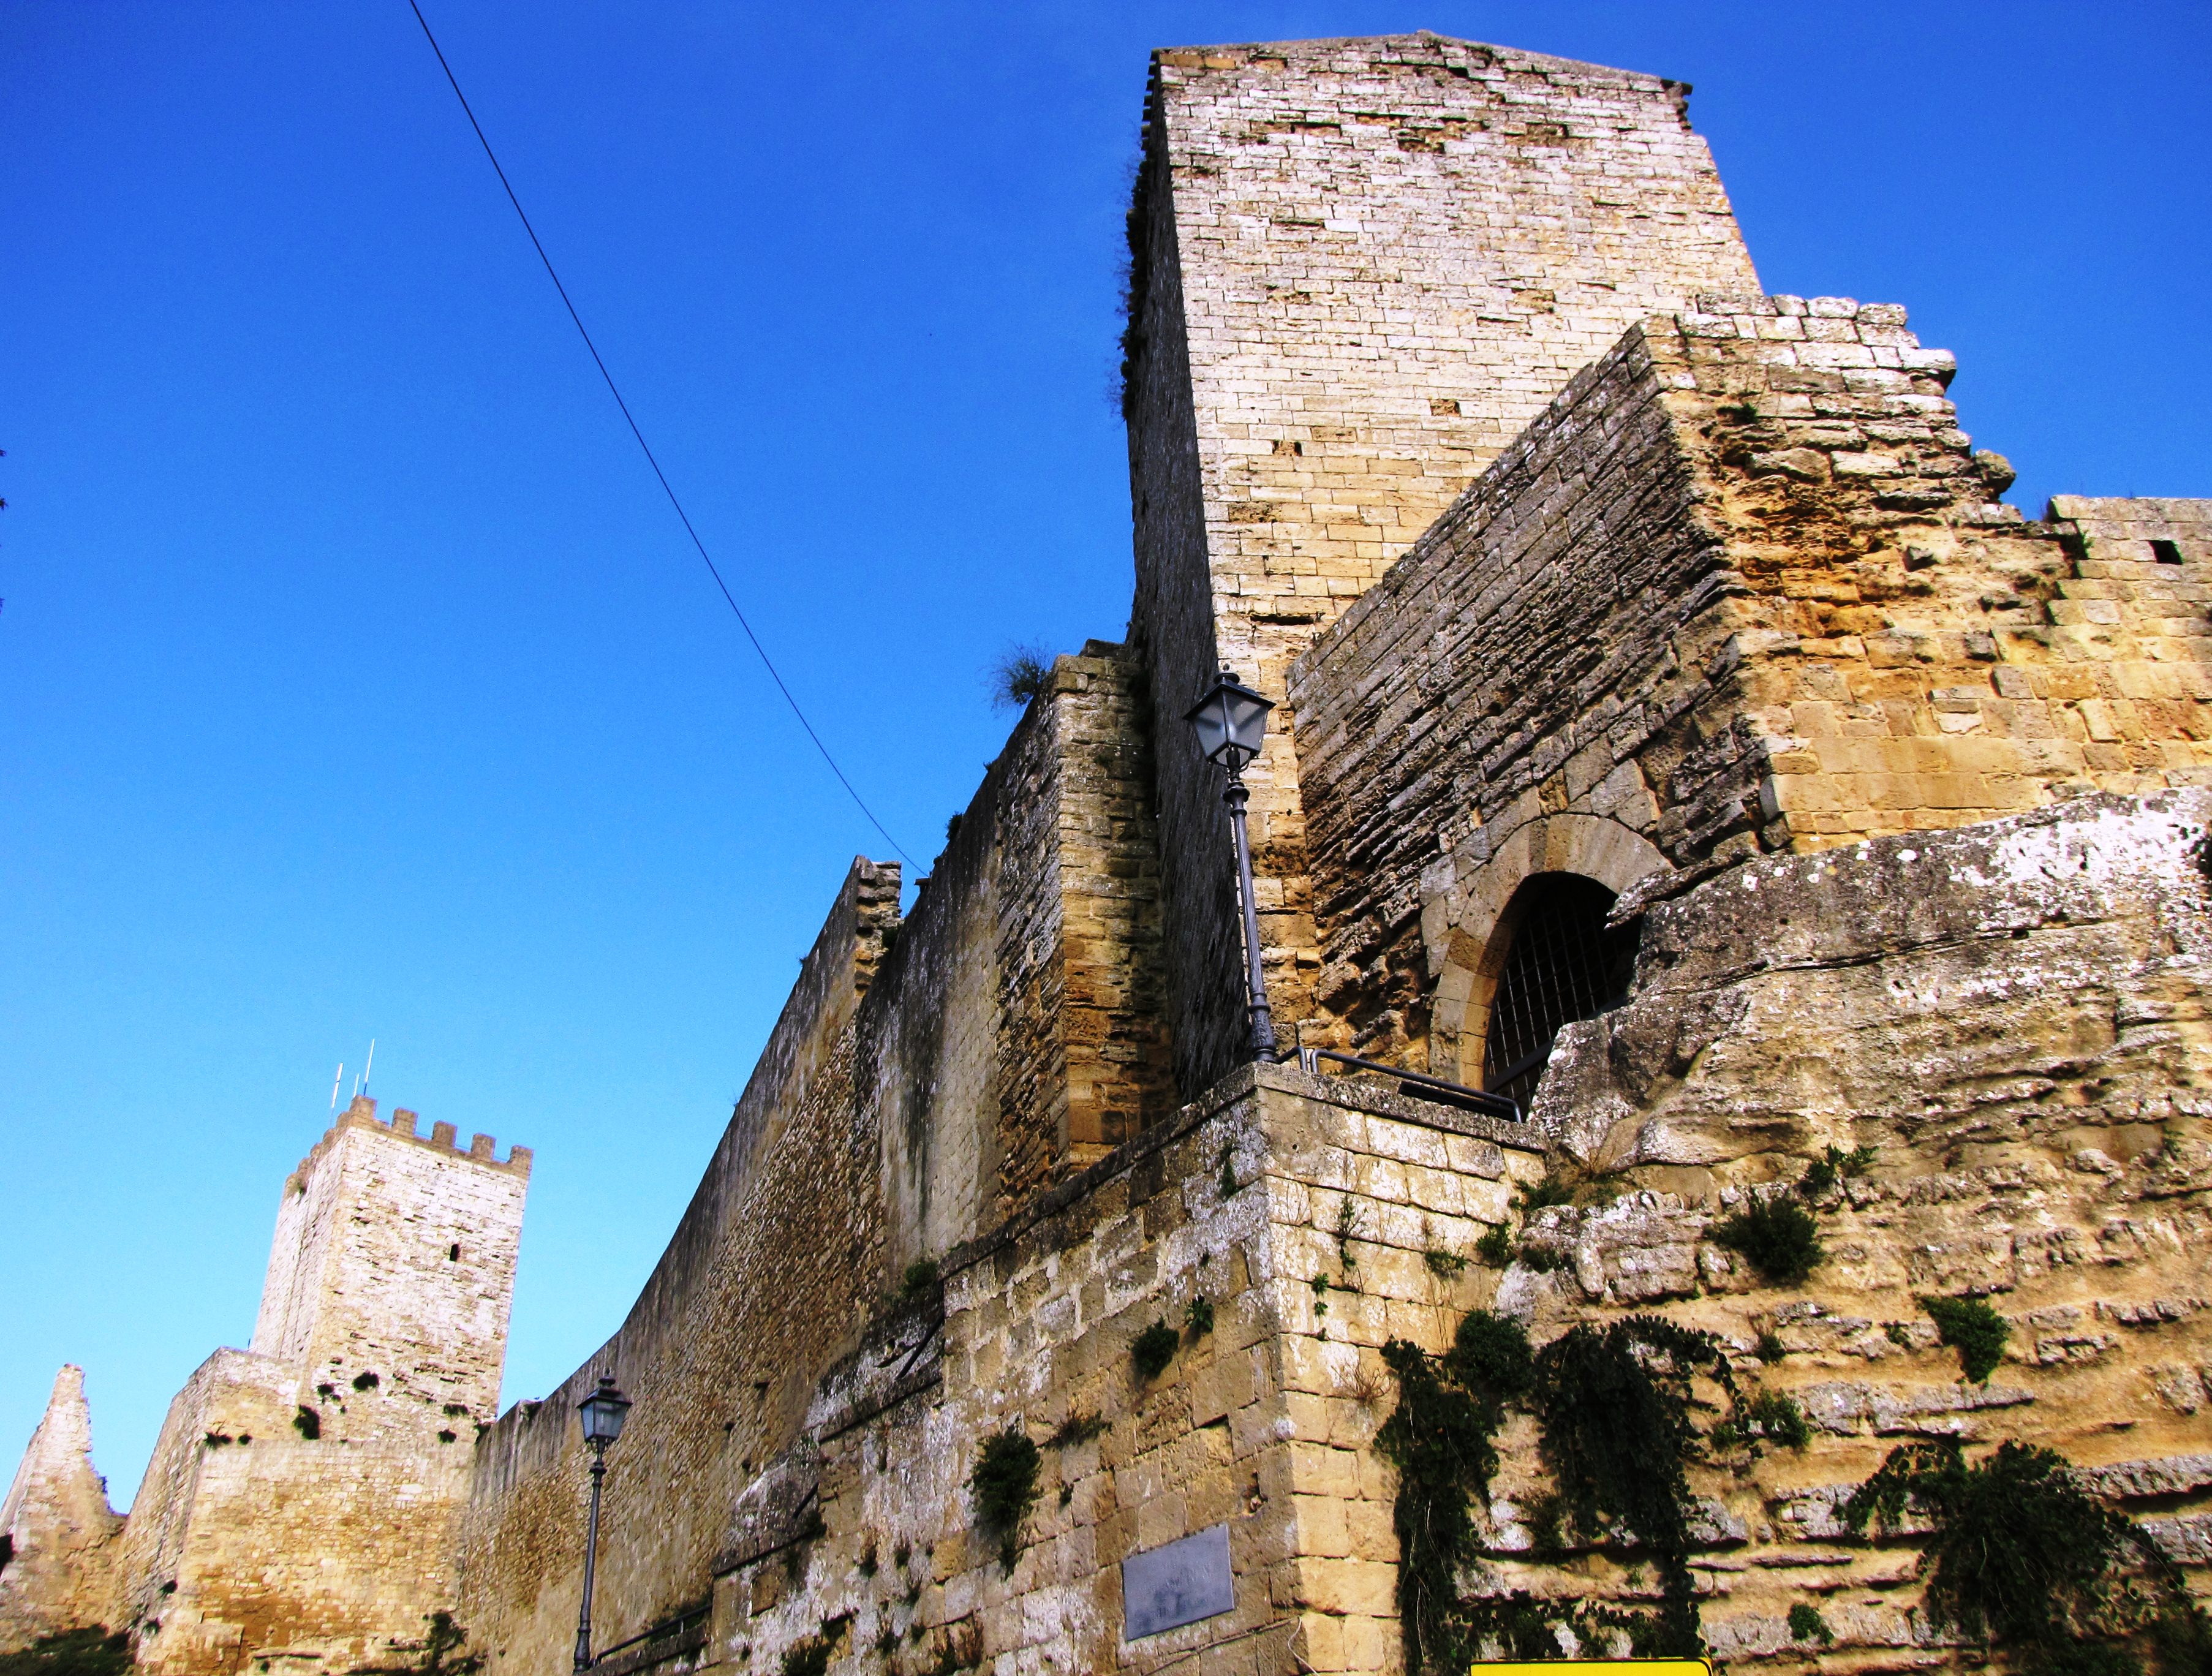 Il castello di Lombardia, simbolo di Enna, perde pezzi